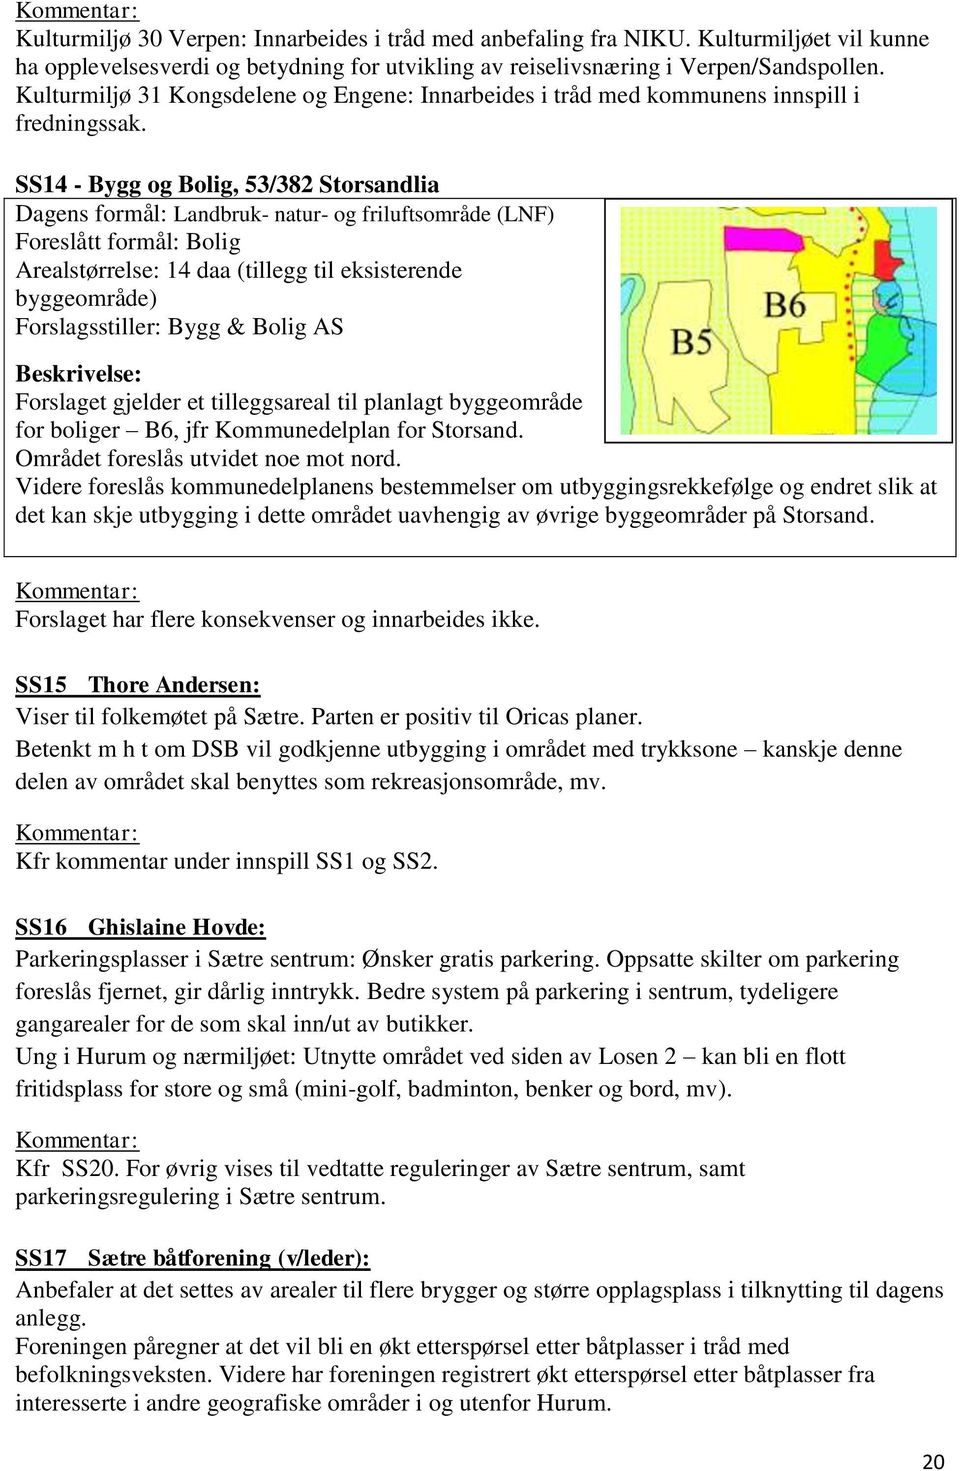 SS14 - Bygg og Bolig, 53/382 Storsandlia Dagens formål: Landbruk- natur- og friluftsområde (LNF) Foreslått formål: Bolig Arealstørrelse: 14 daa (tillegg til eksisterende byggeområde) Forslagsstiller: